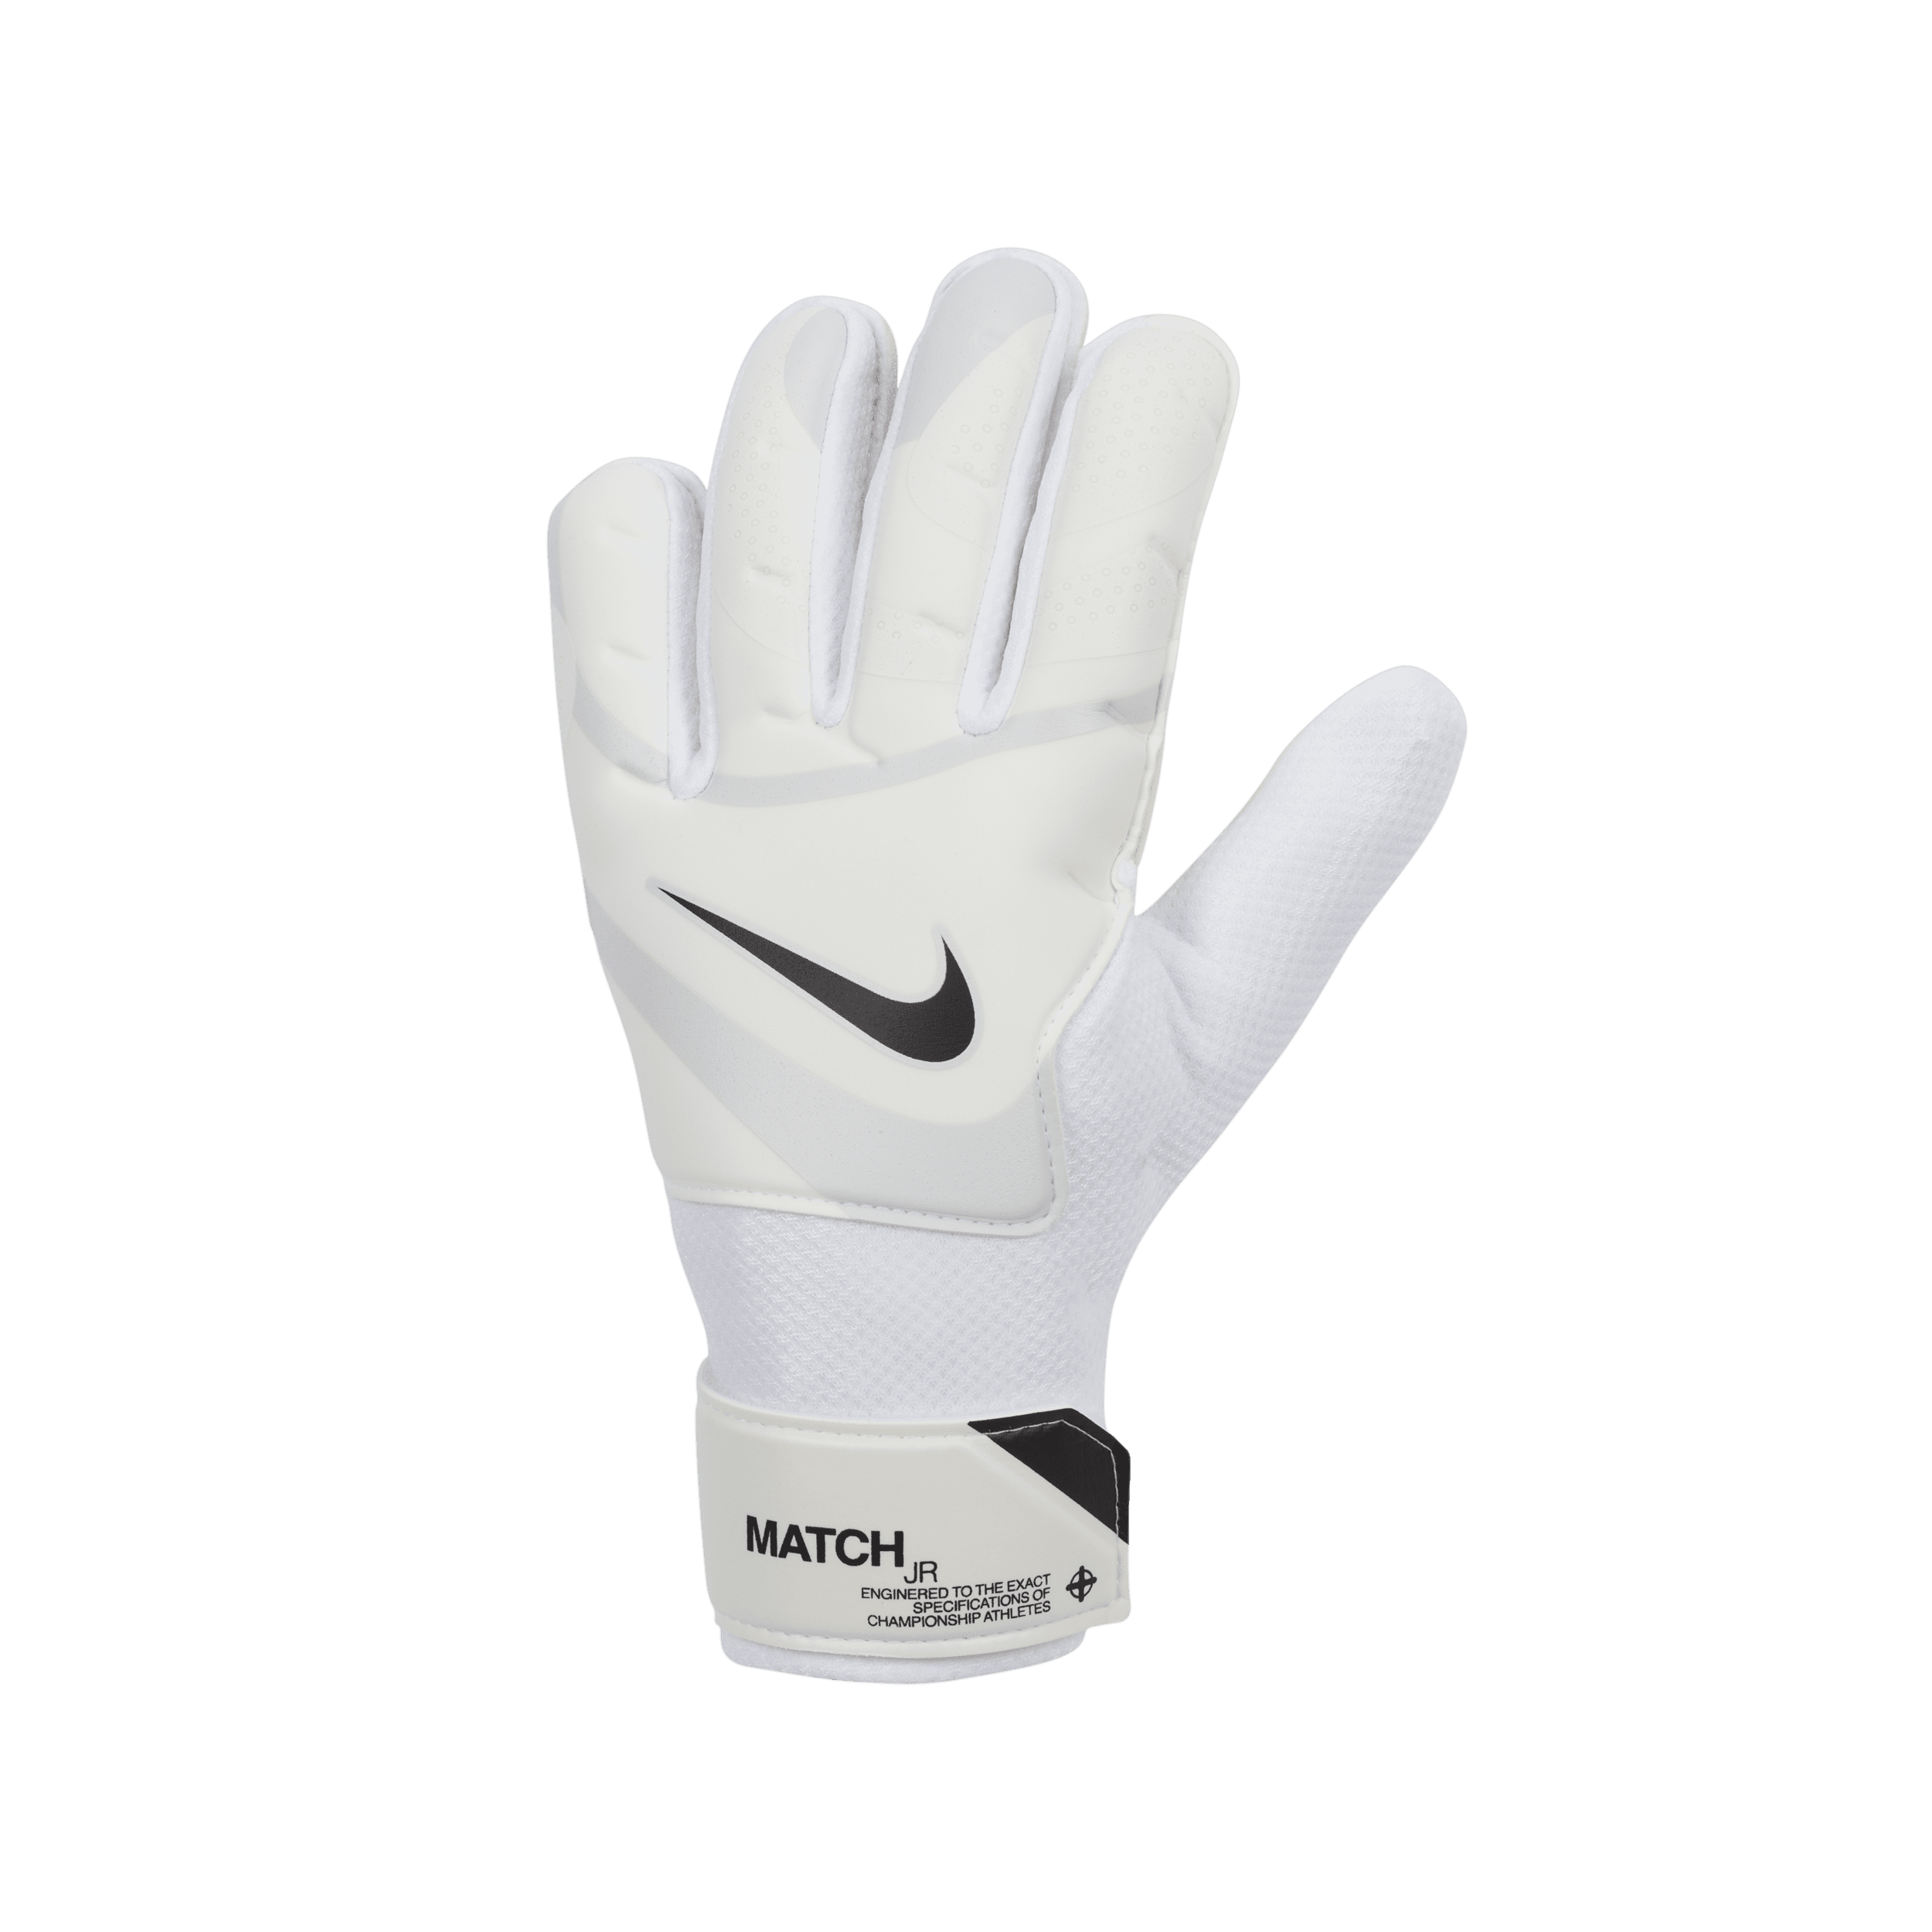 Nike Match Jr. keeperhandschoenen - Wit